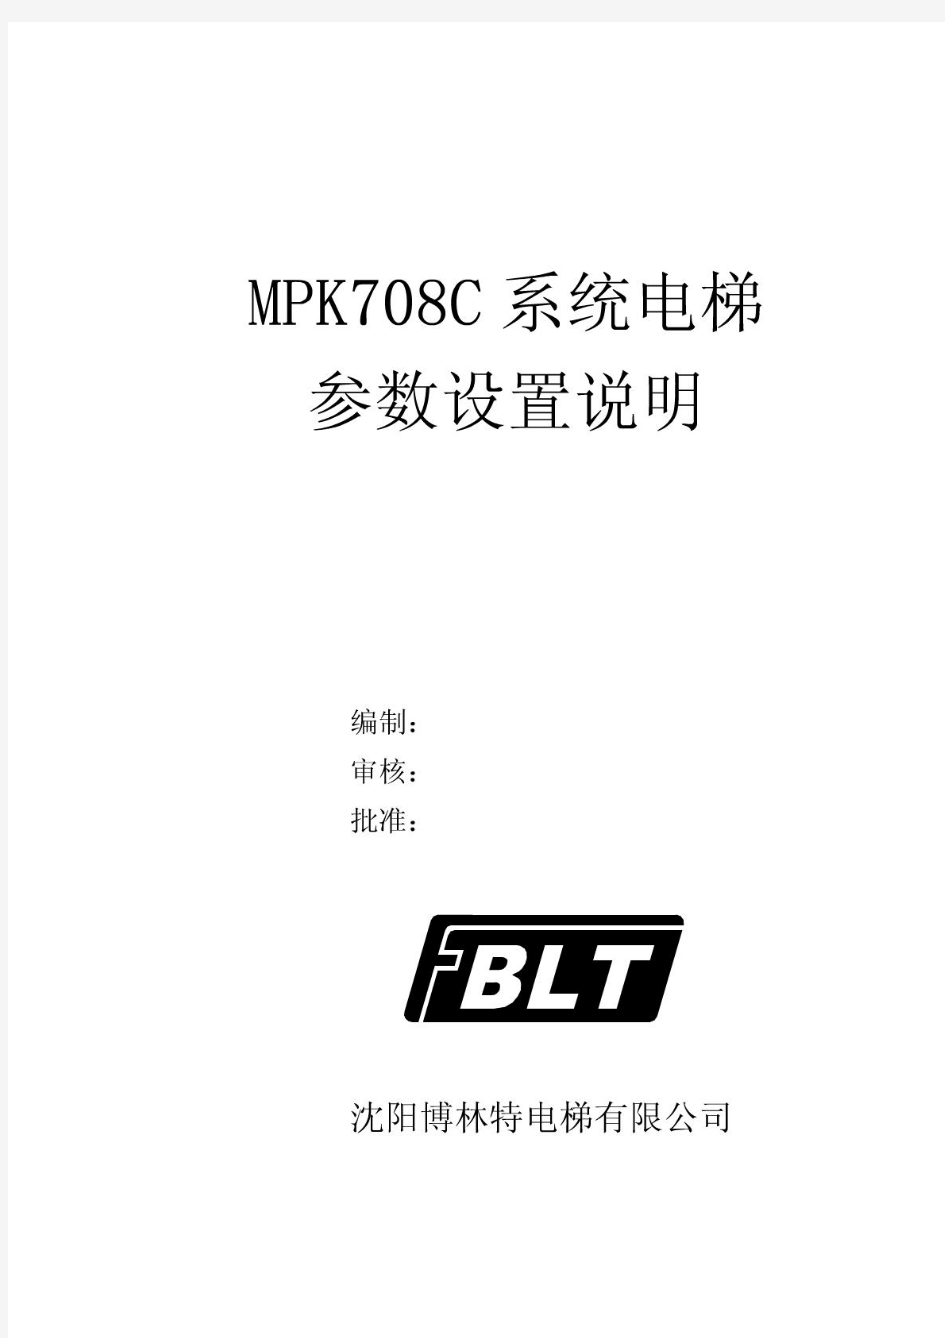 博林特MPK708C系统电梯参数设置说明